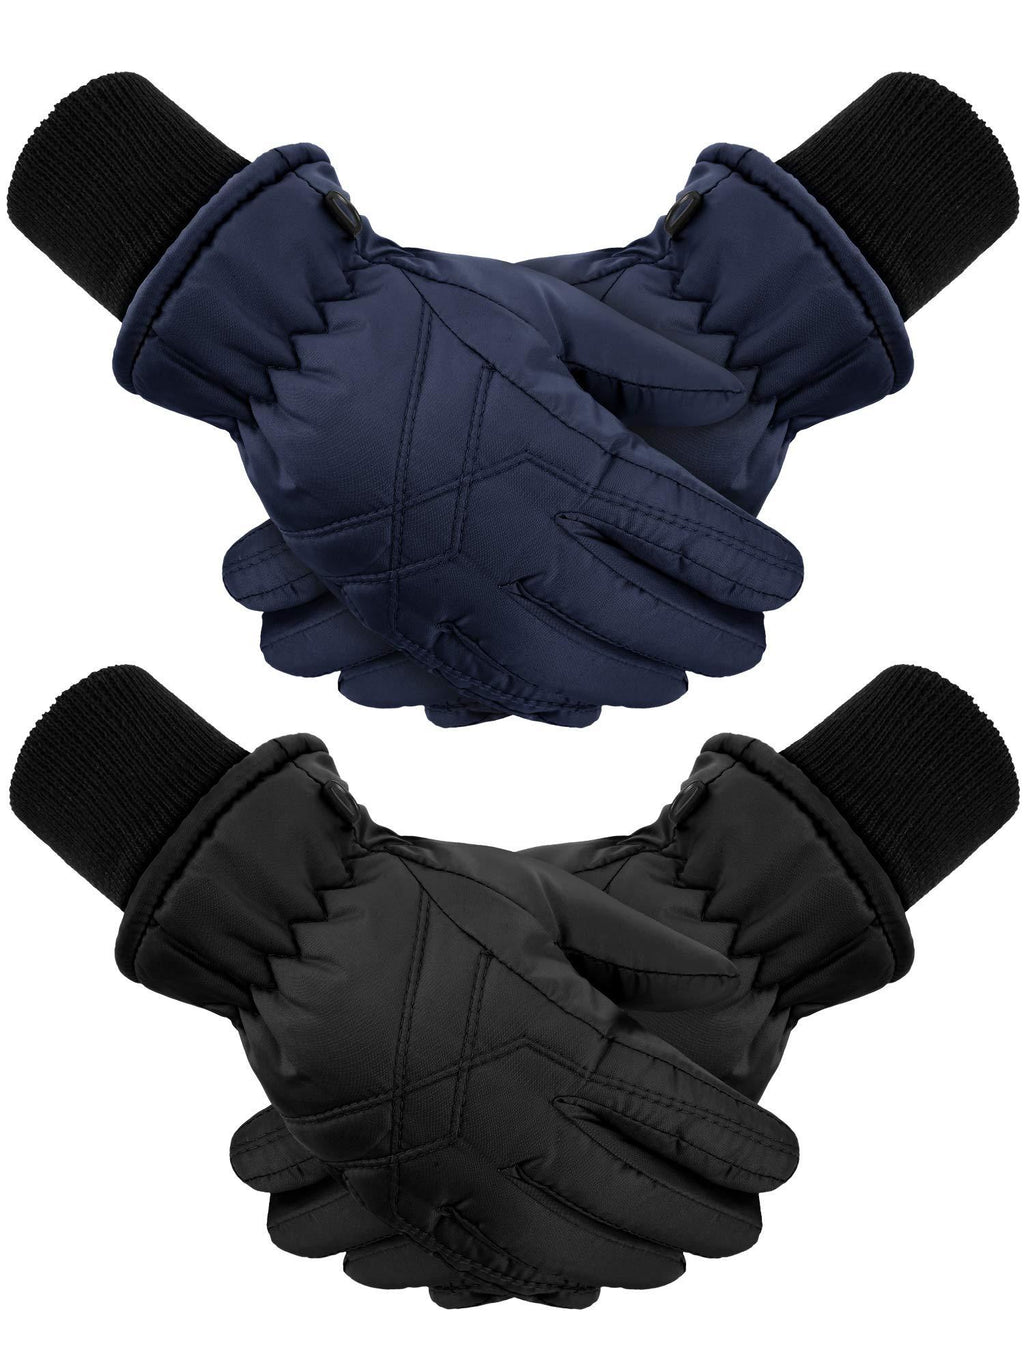 [Australia] - 2 Pairs Kids Winter Gloves Waterproof Ski Gloves Child Snow Warm Gloves Mittens Black, Navy Blue 4-7 Years 